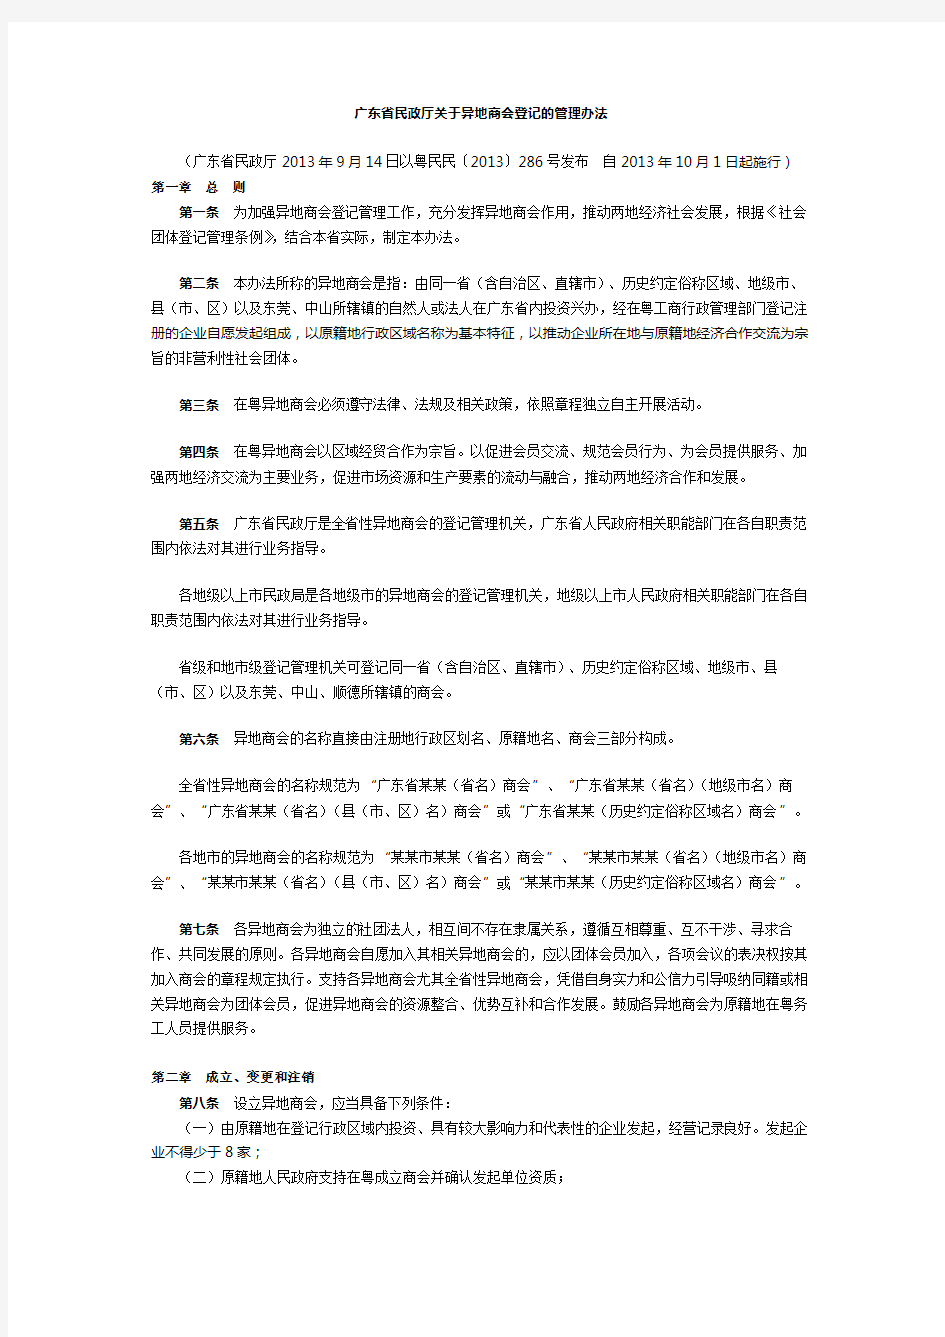 广东省民政厅关于异地商会登记的管理办法